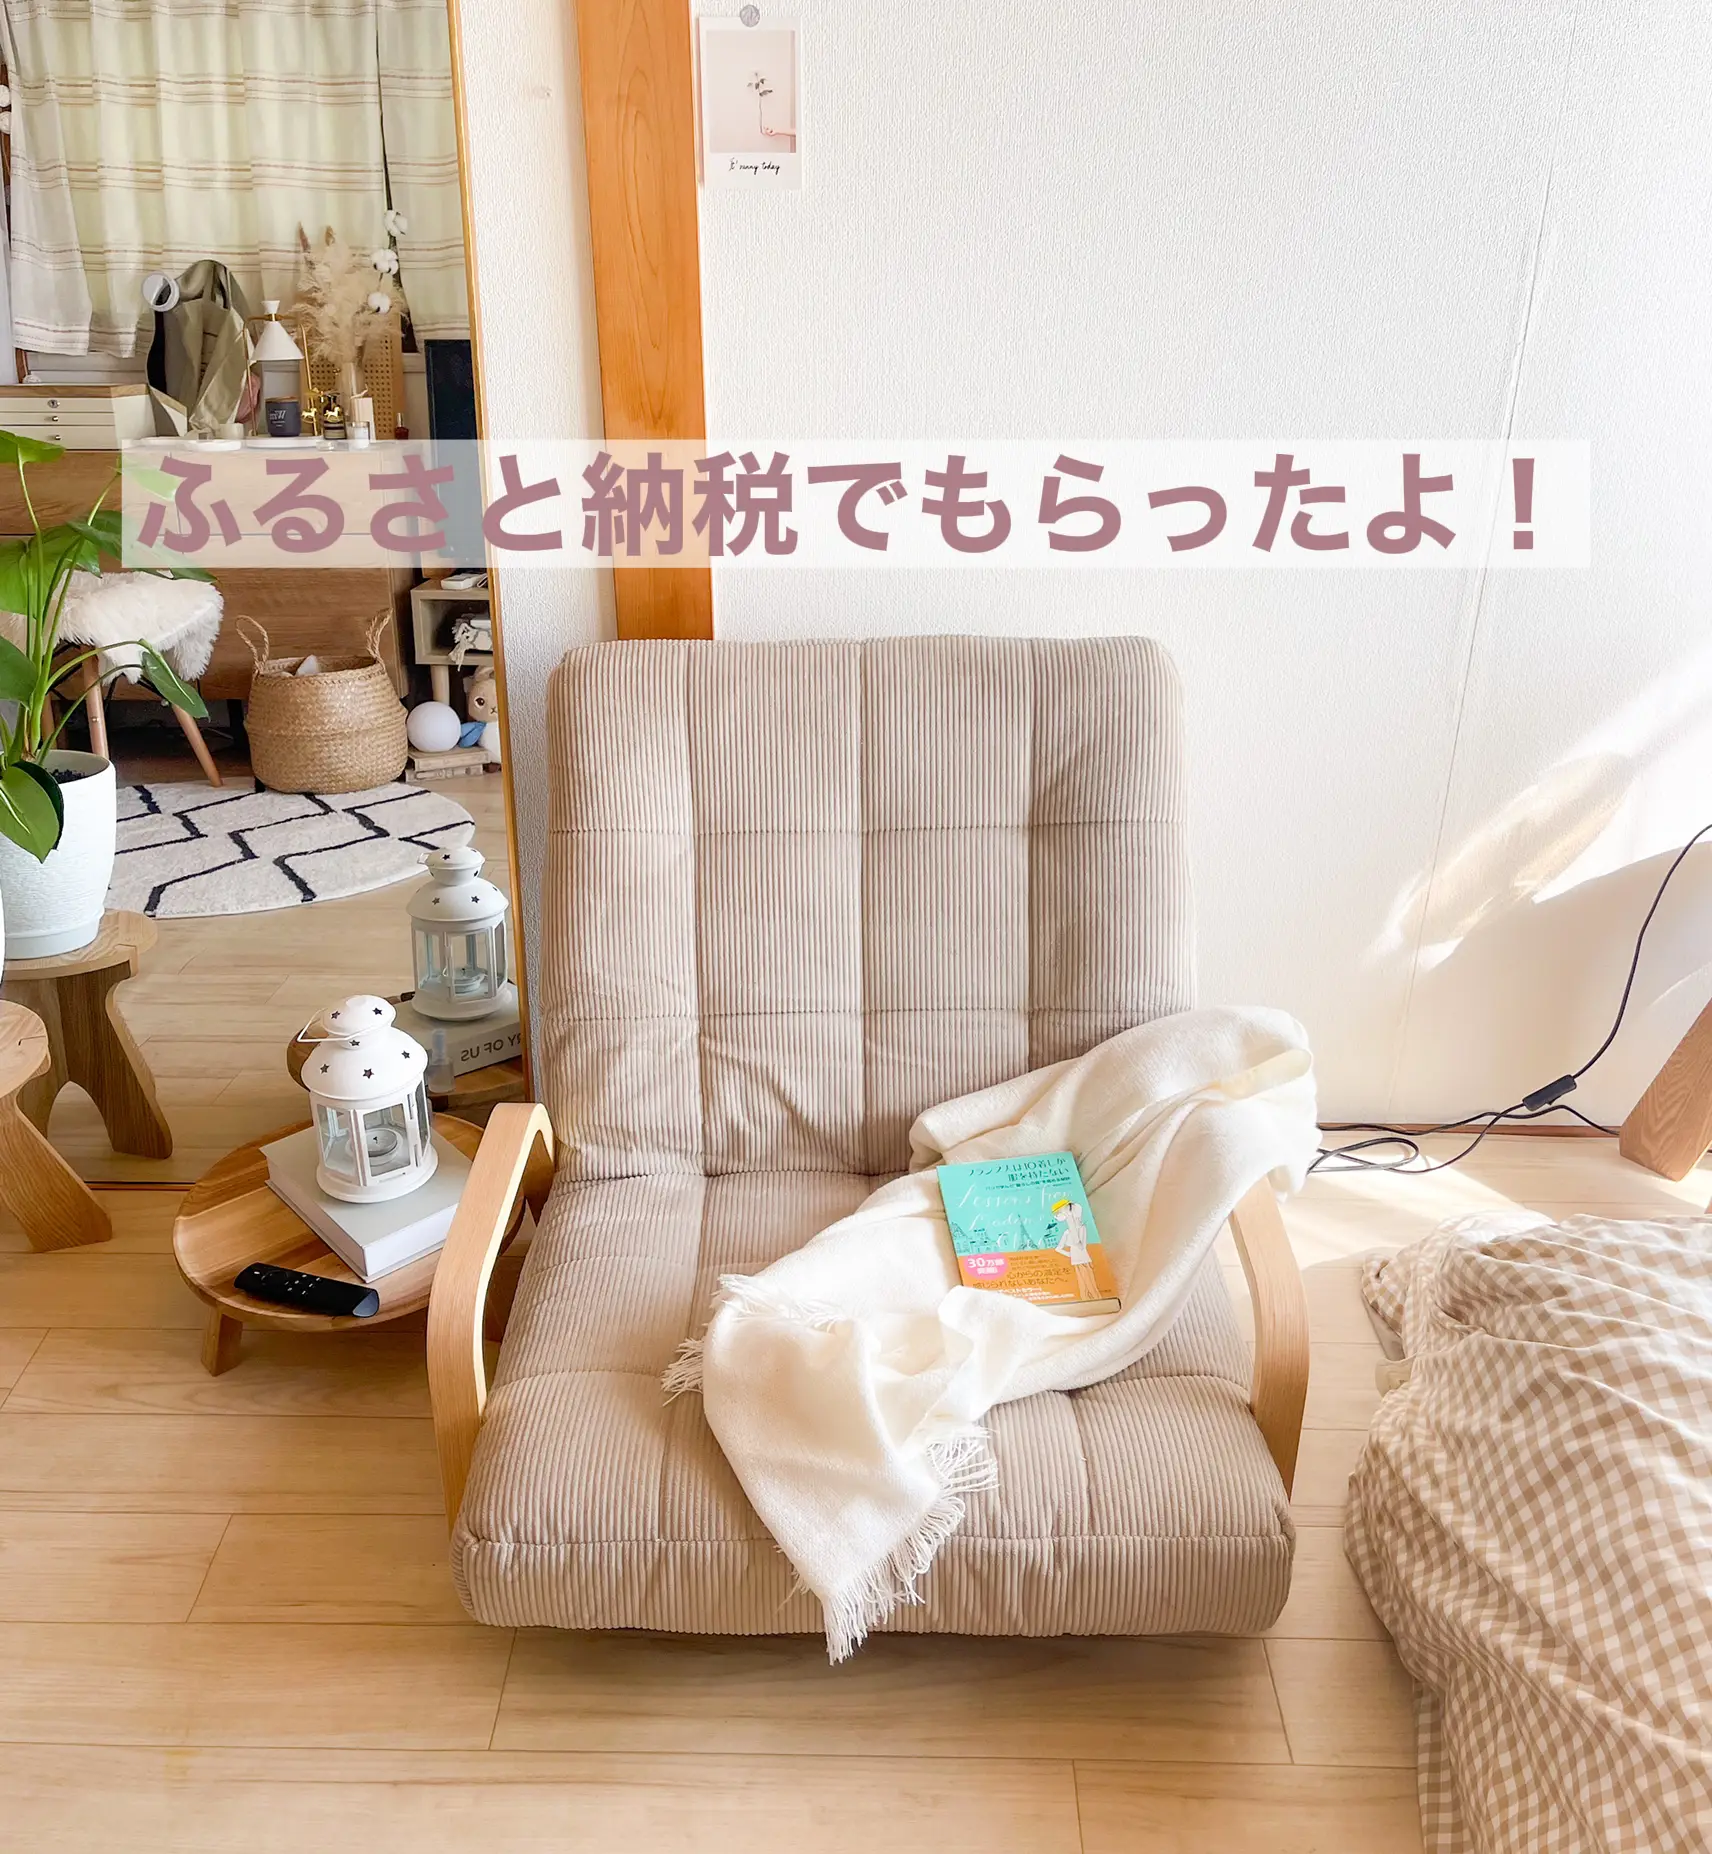 念願のソファのあるお部屋 | Mai （実家暮らし）が投稿したフォト